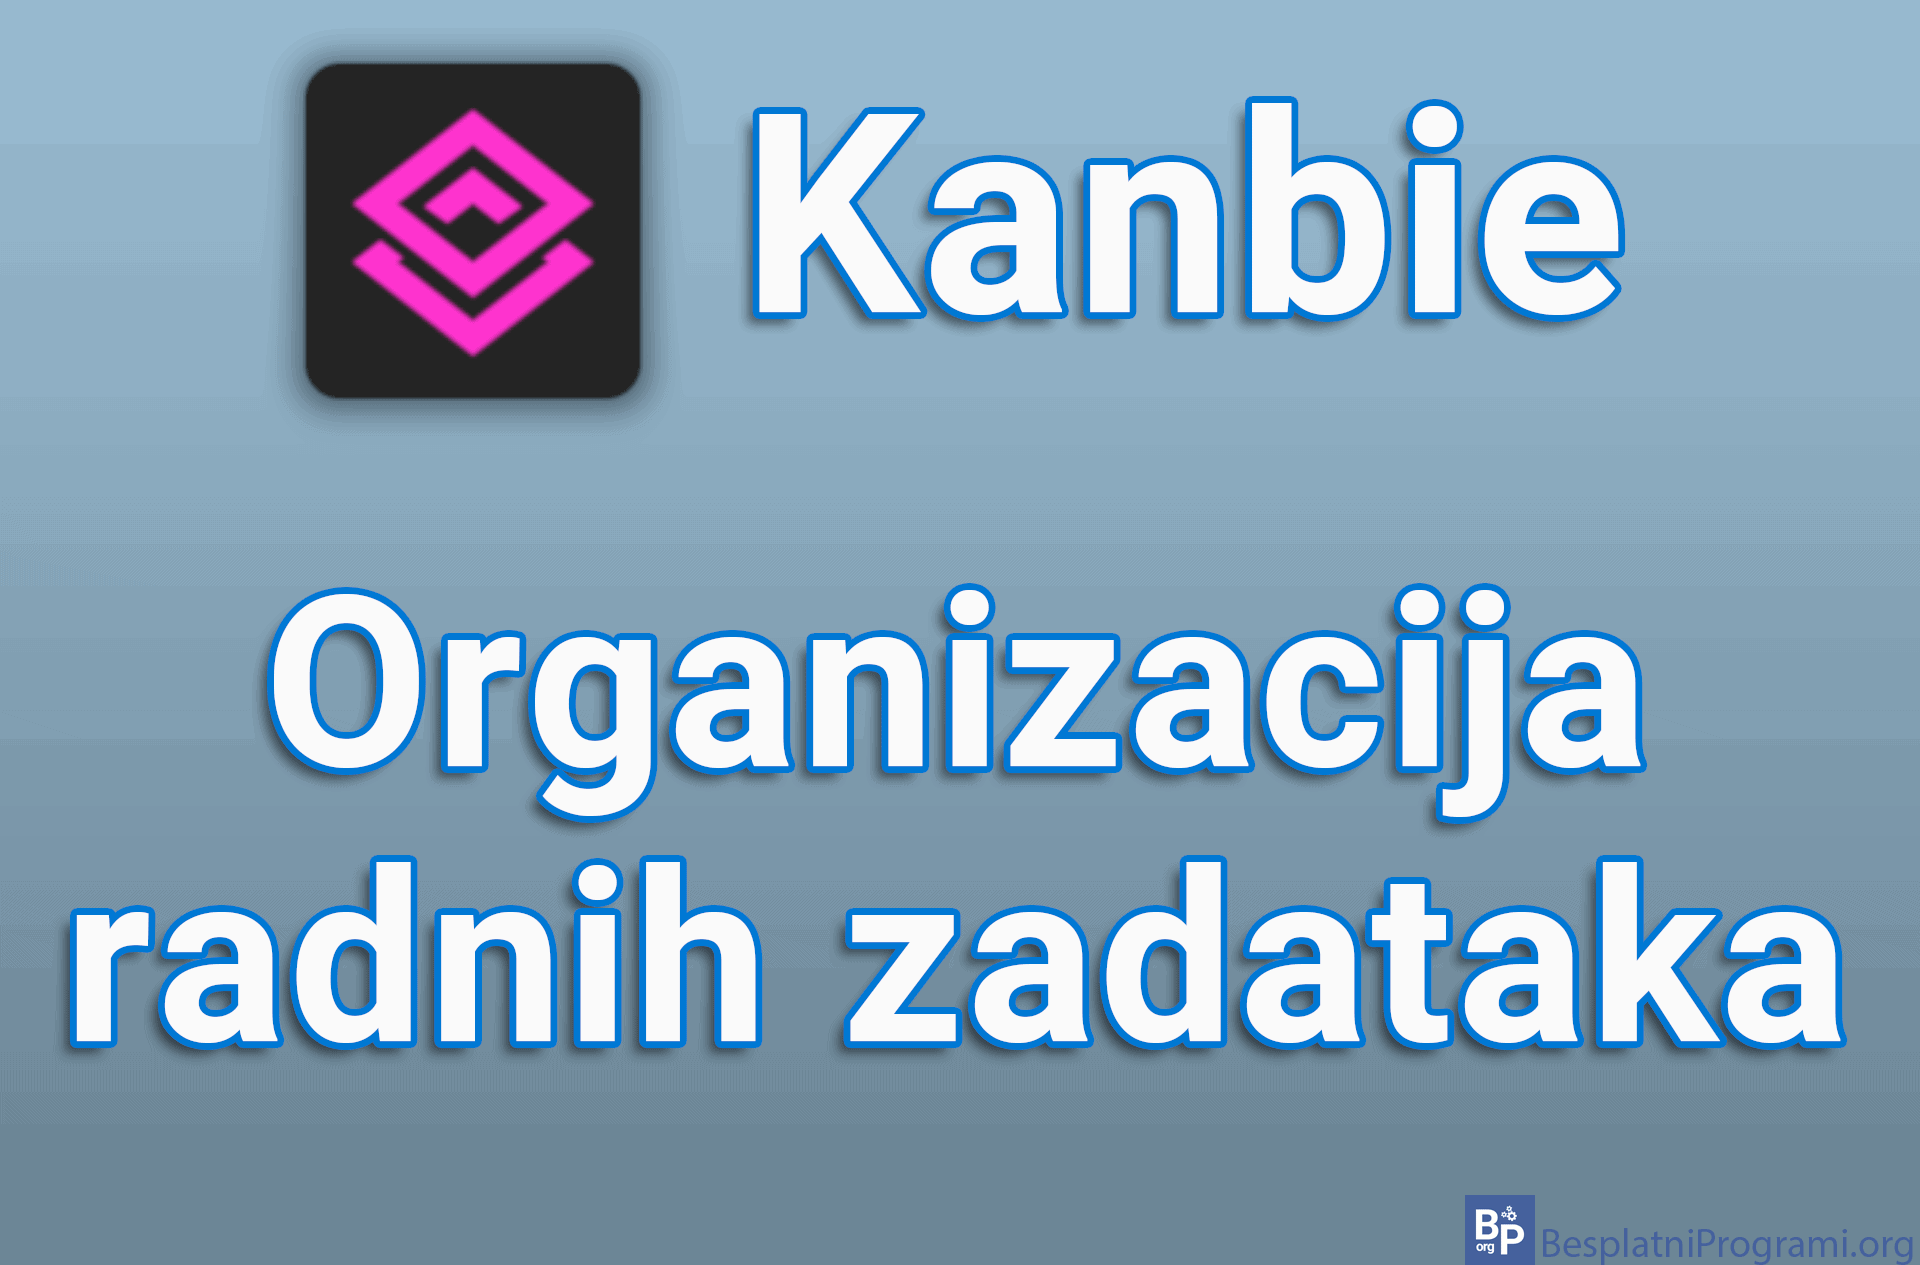 Kanbie – Organizacija radnih zadataka